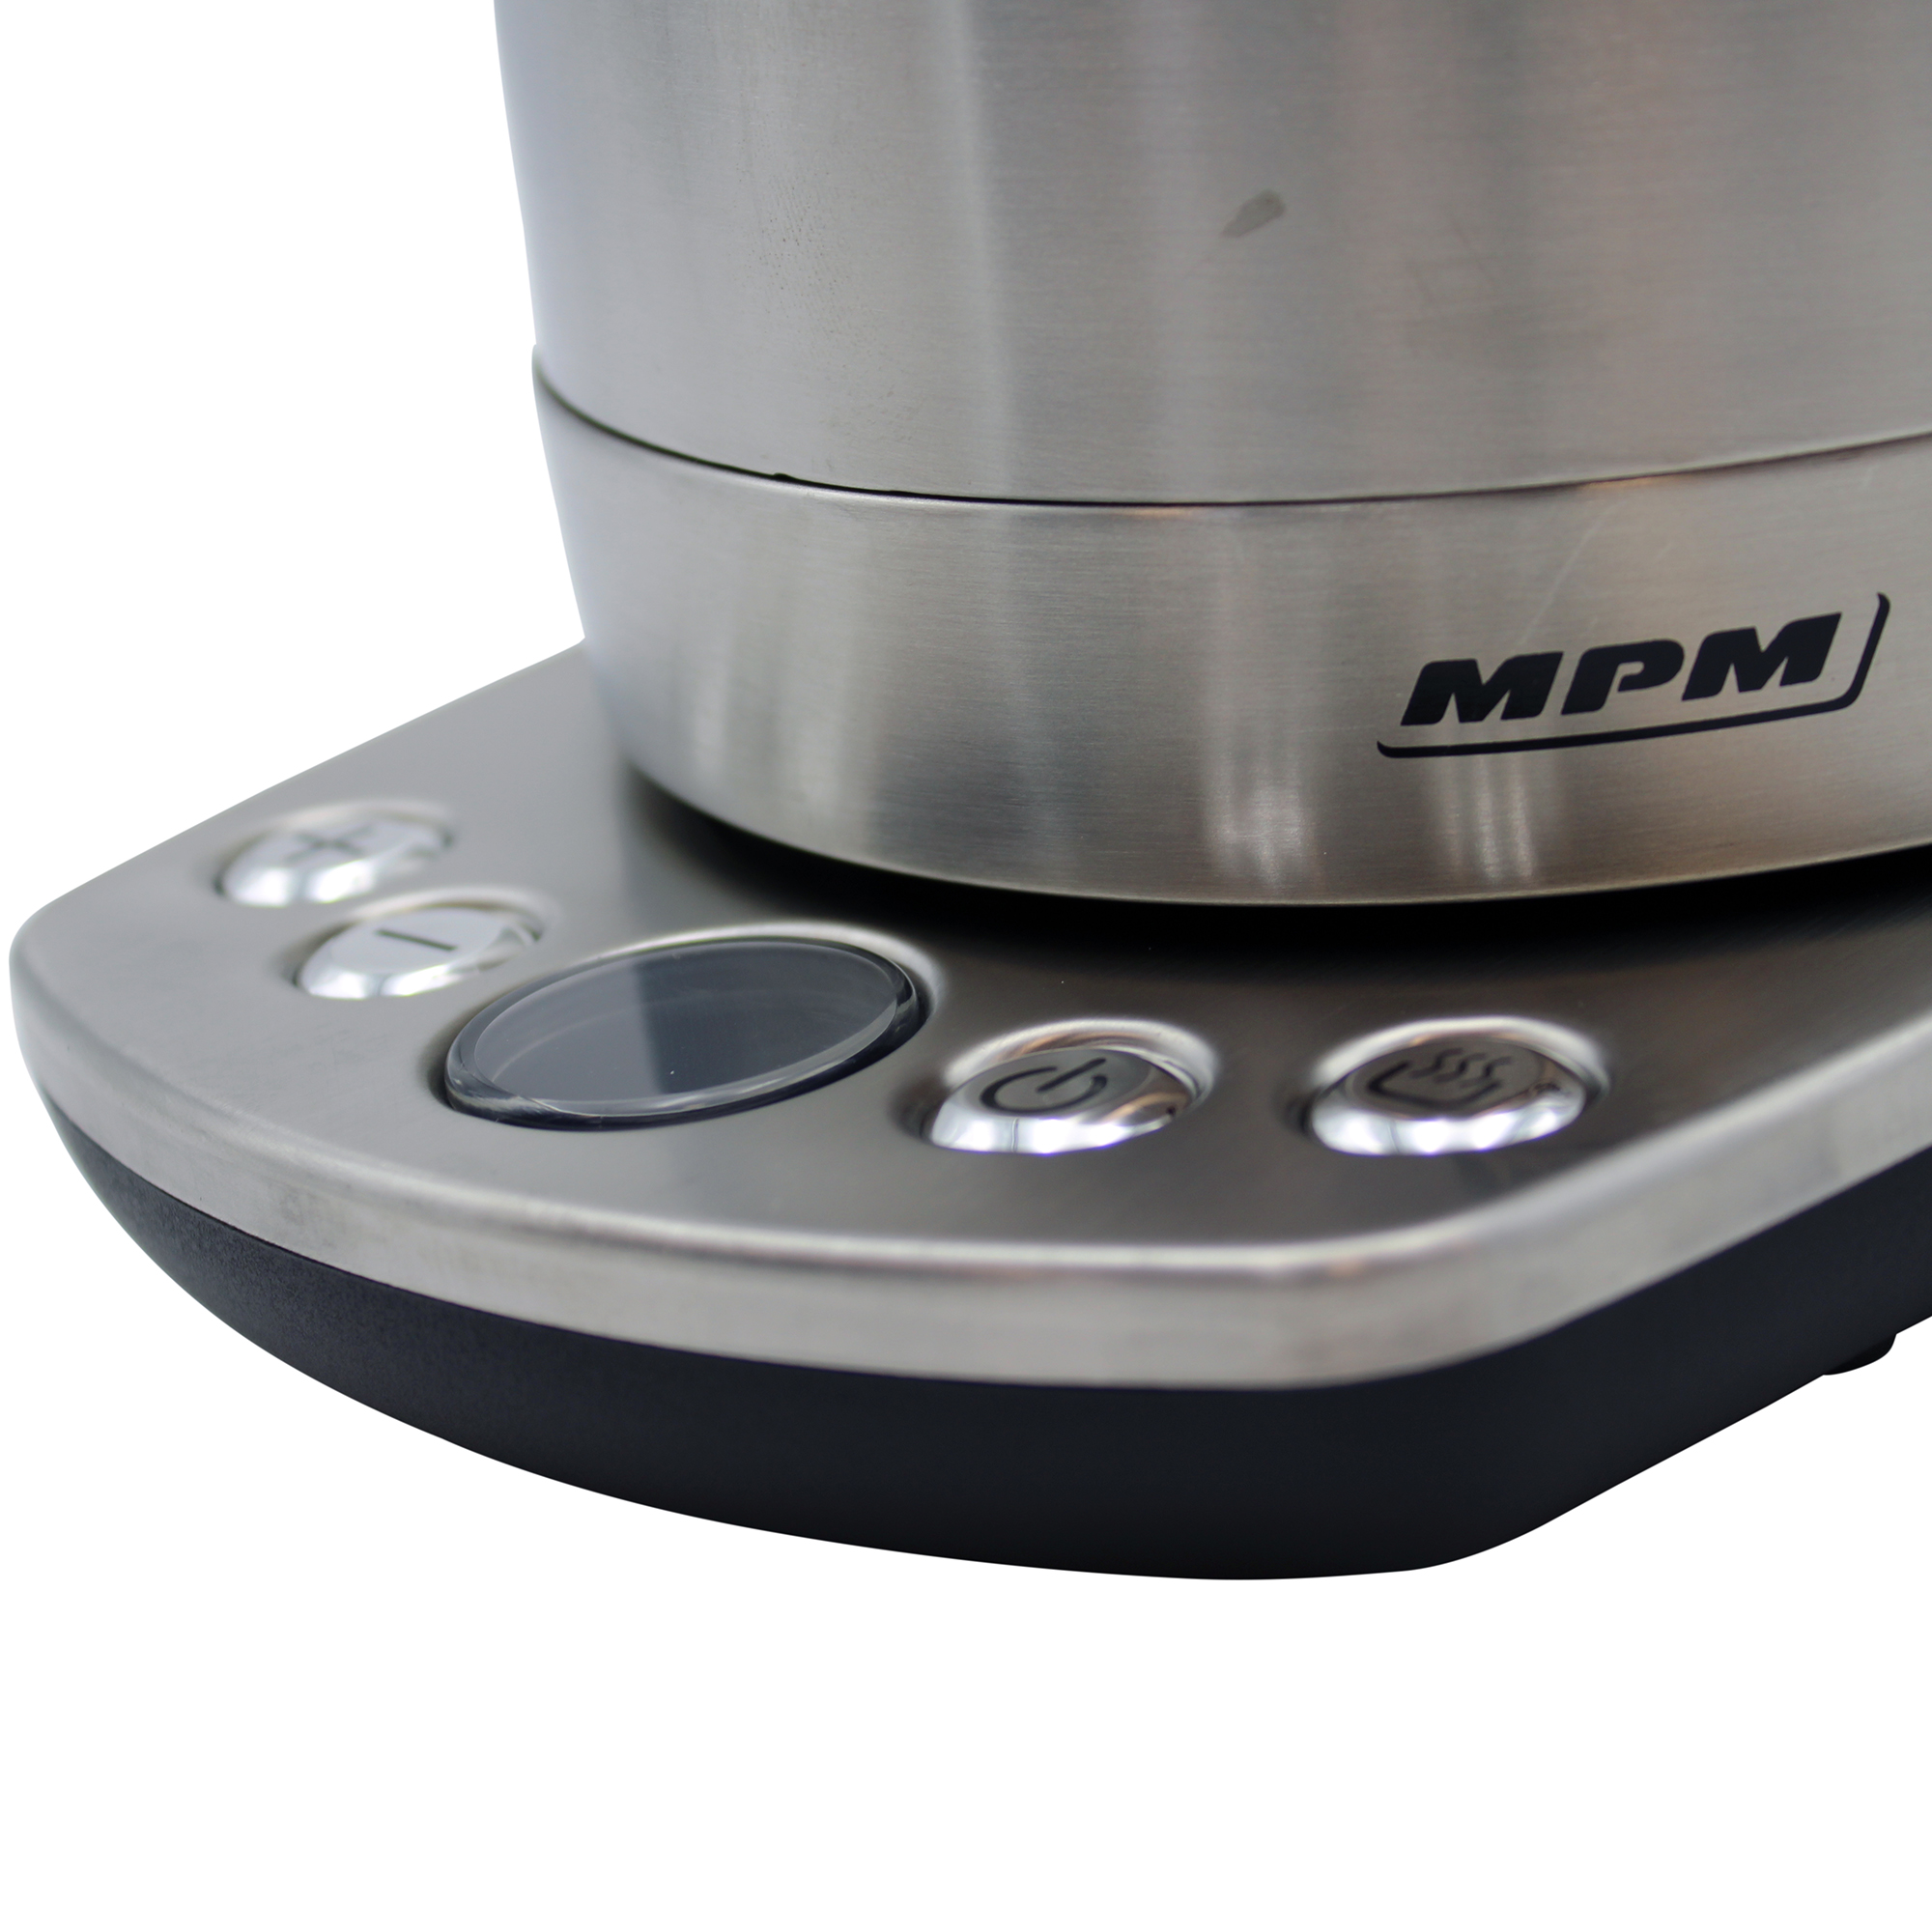 MPM MCZ-51 Wasserkocher, Silber